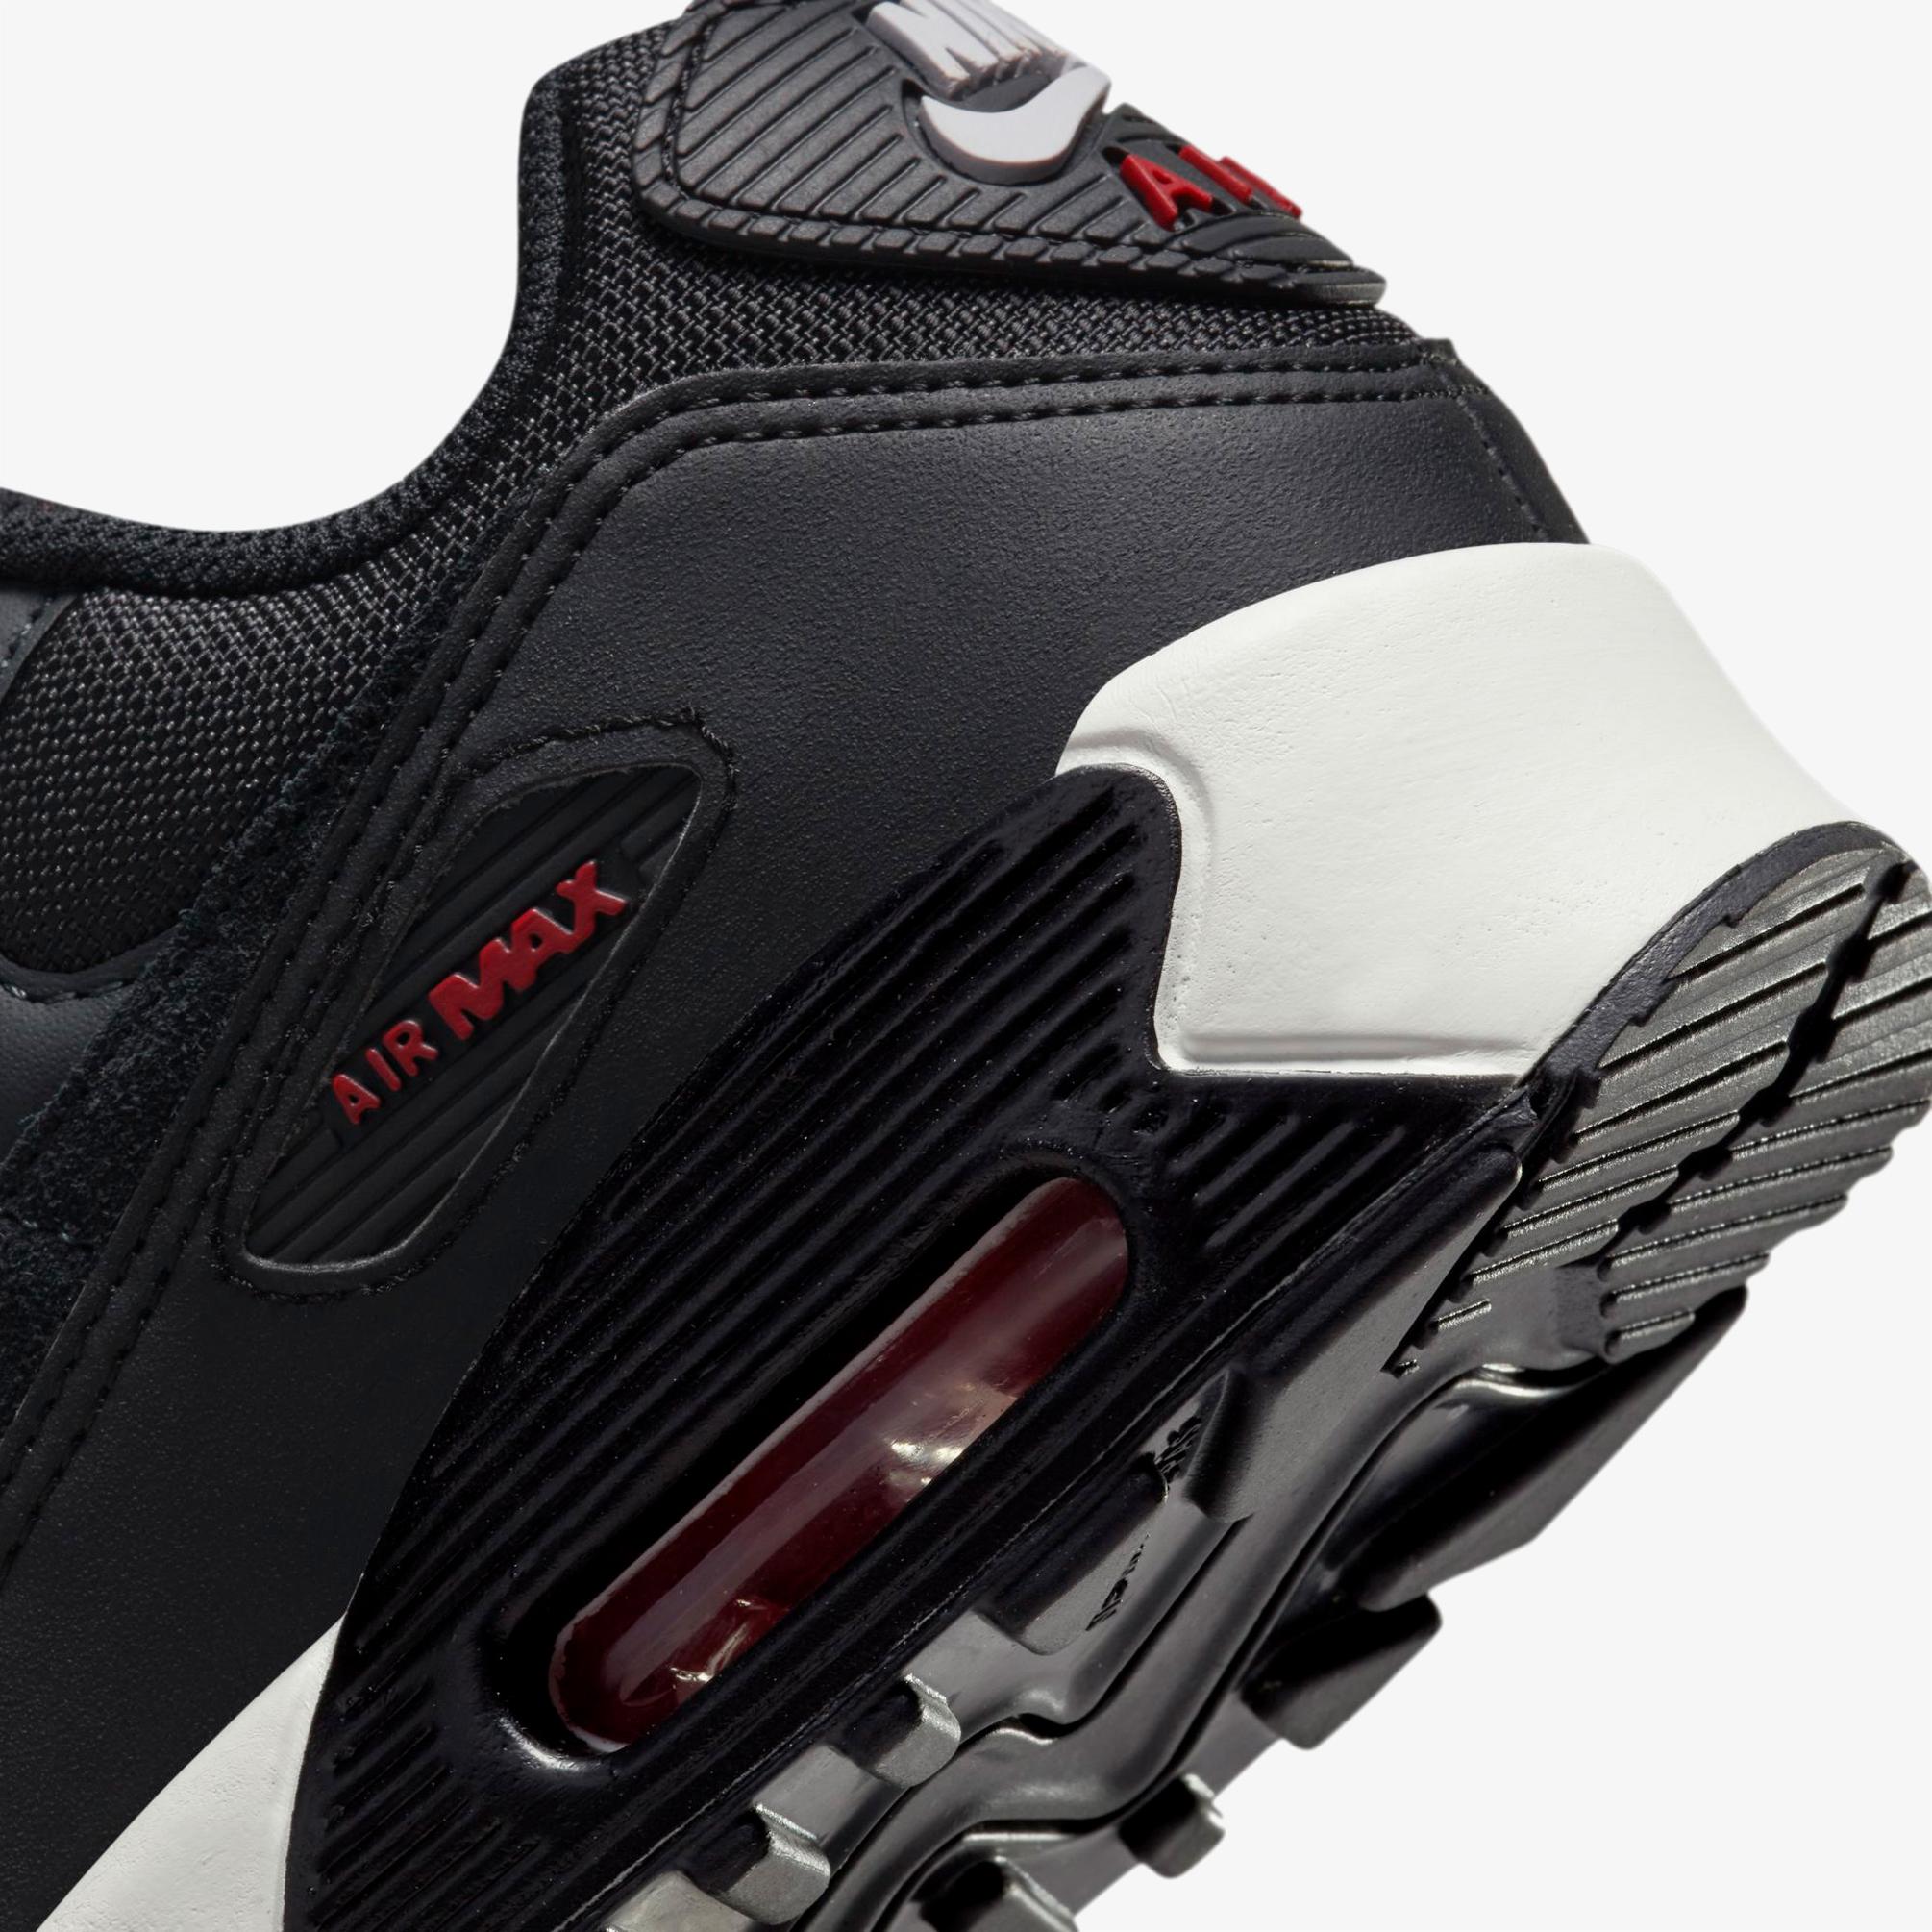  Nike Air Max 90 Leather Kadın Gri Spor Ayakkabı